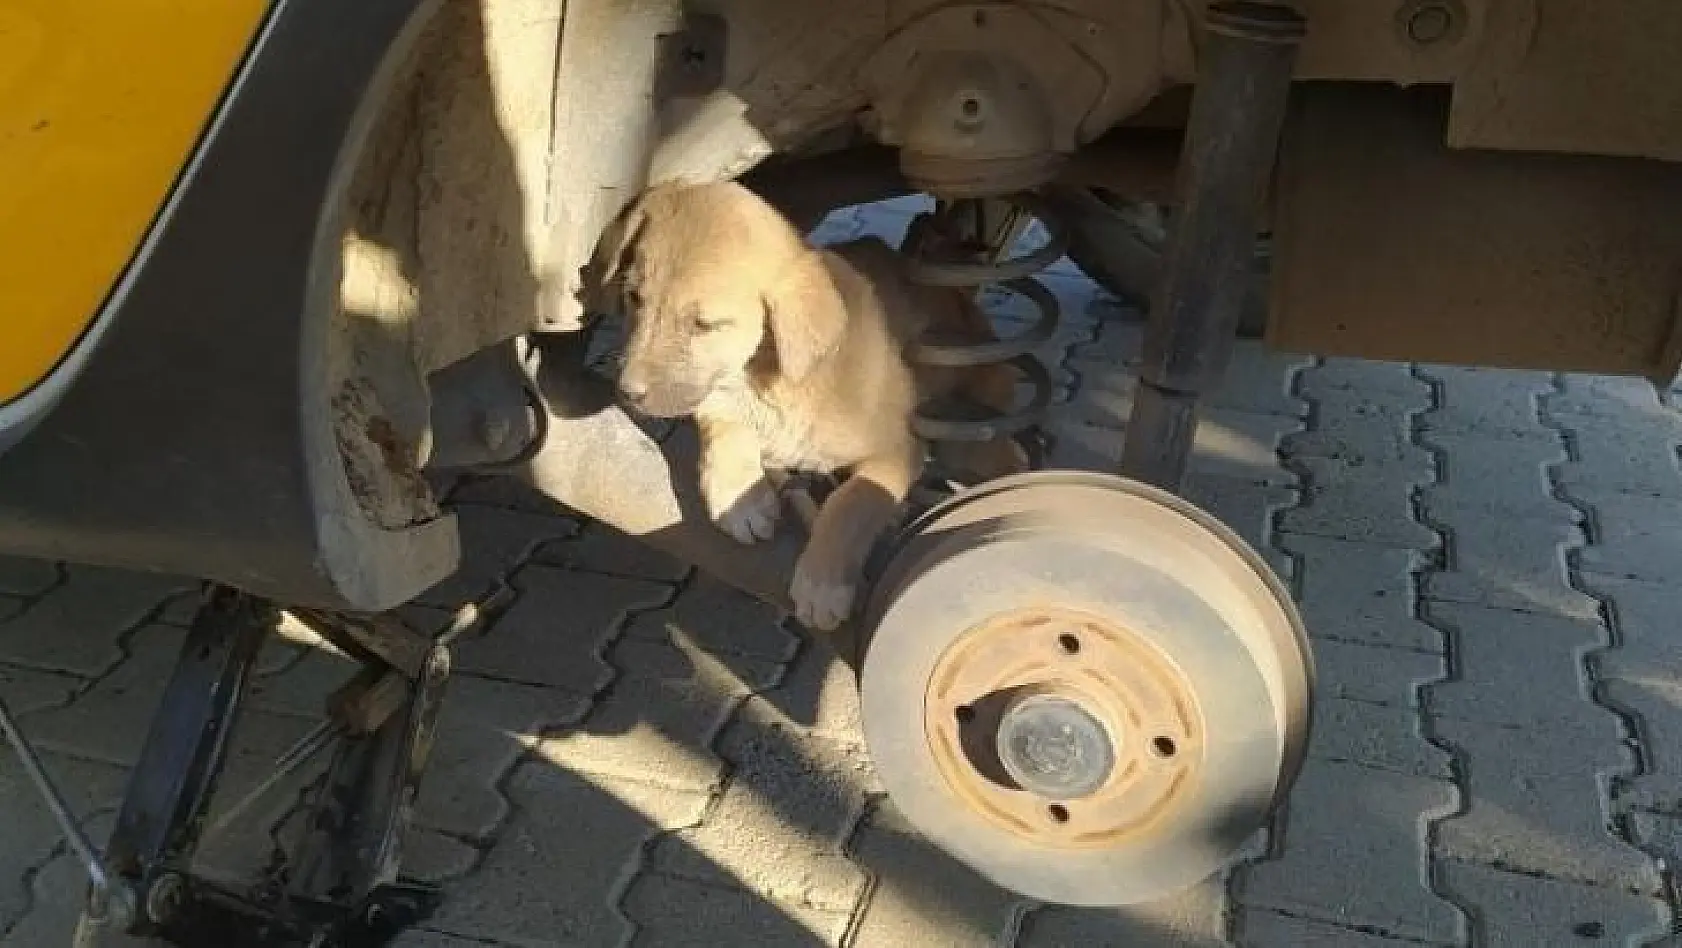 Bingöl'de otomobilin tekerine sıkışan yavru köpek kurtarıldı